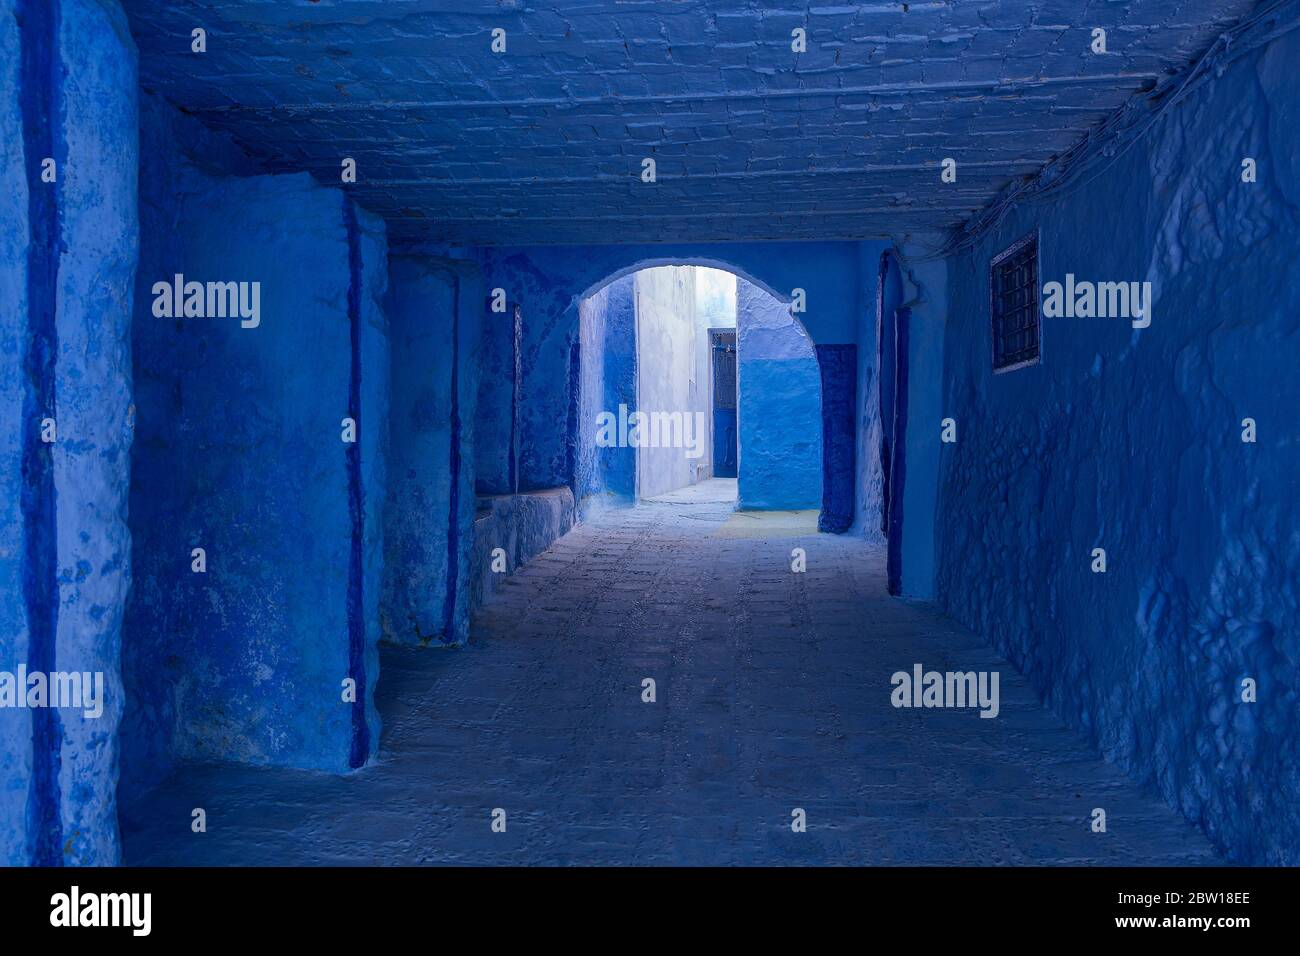 Différentes nuances de bleu dans la vieille ville de Chefchaouen, également connue sous le nom de ville bleue, située dans les montagnes de RIF au nord-ouest du Maroc Banque D'Images